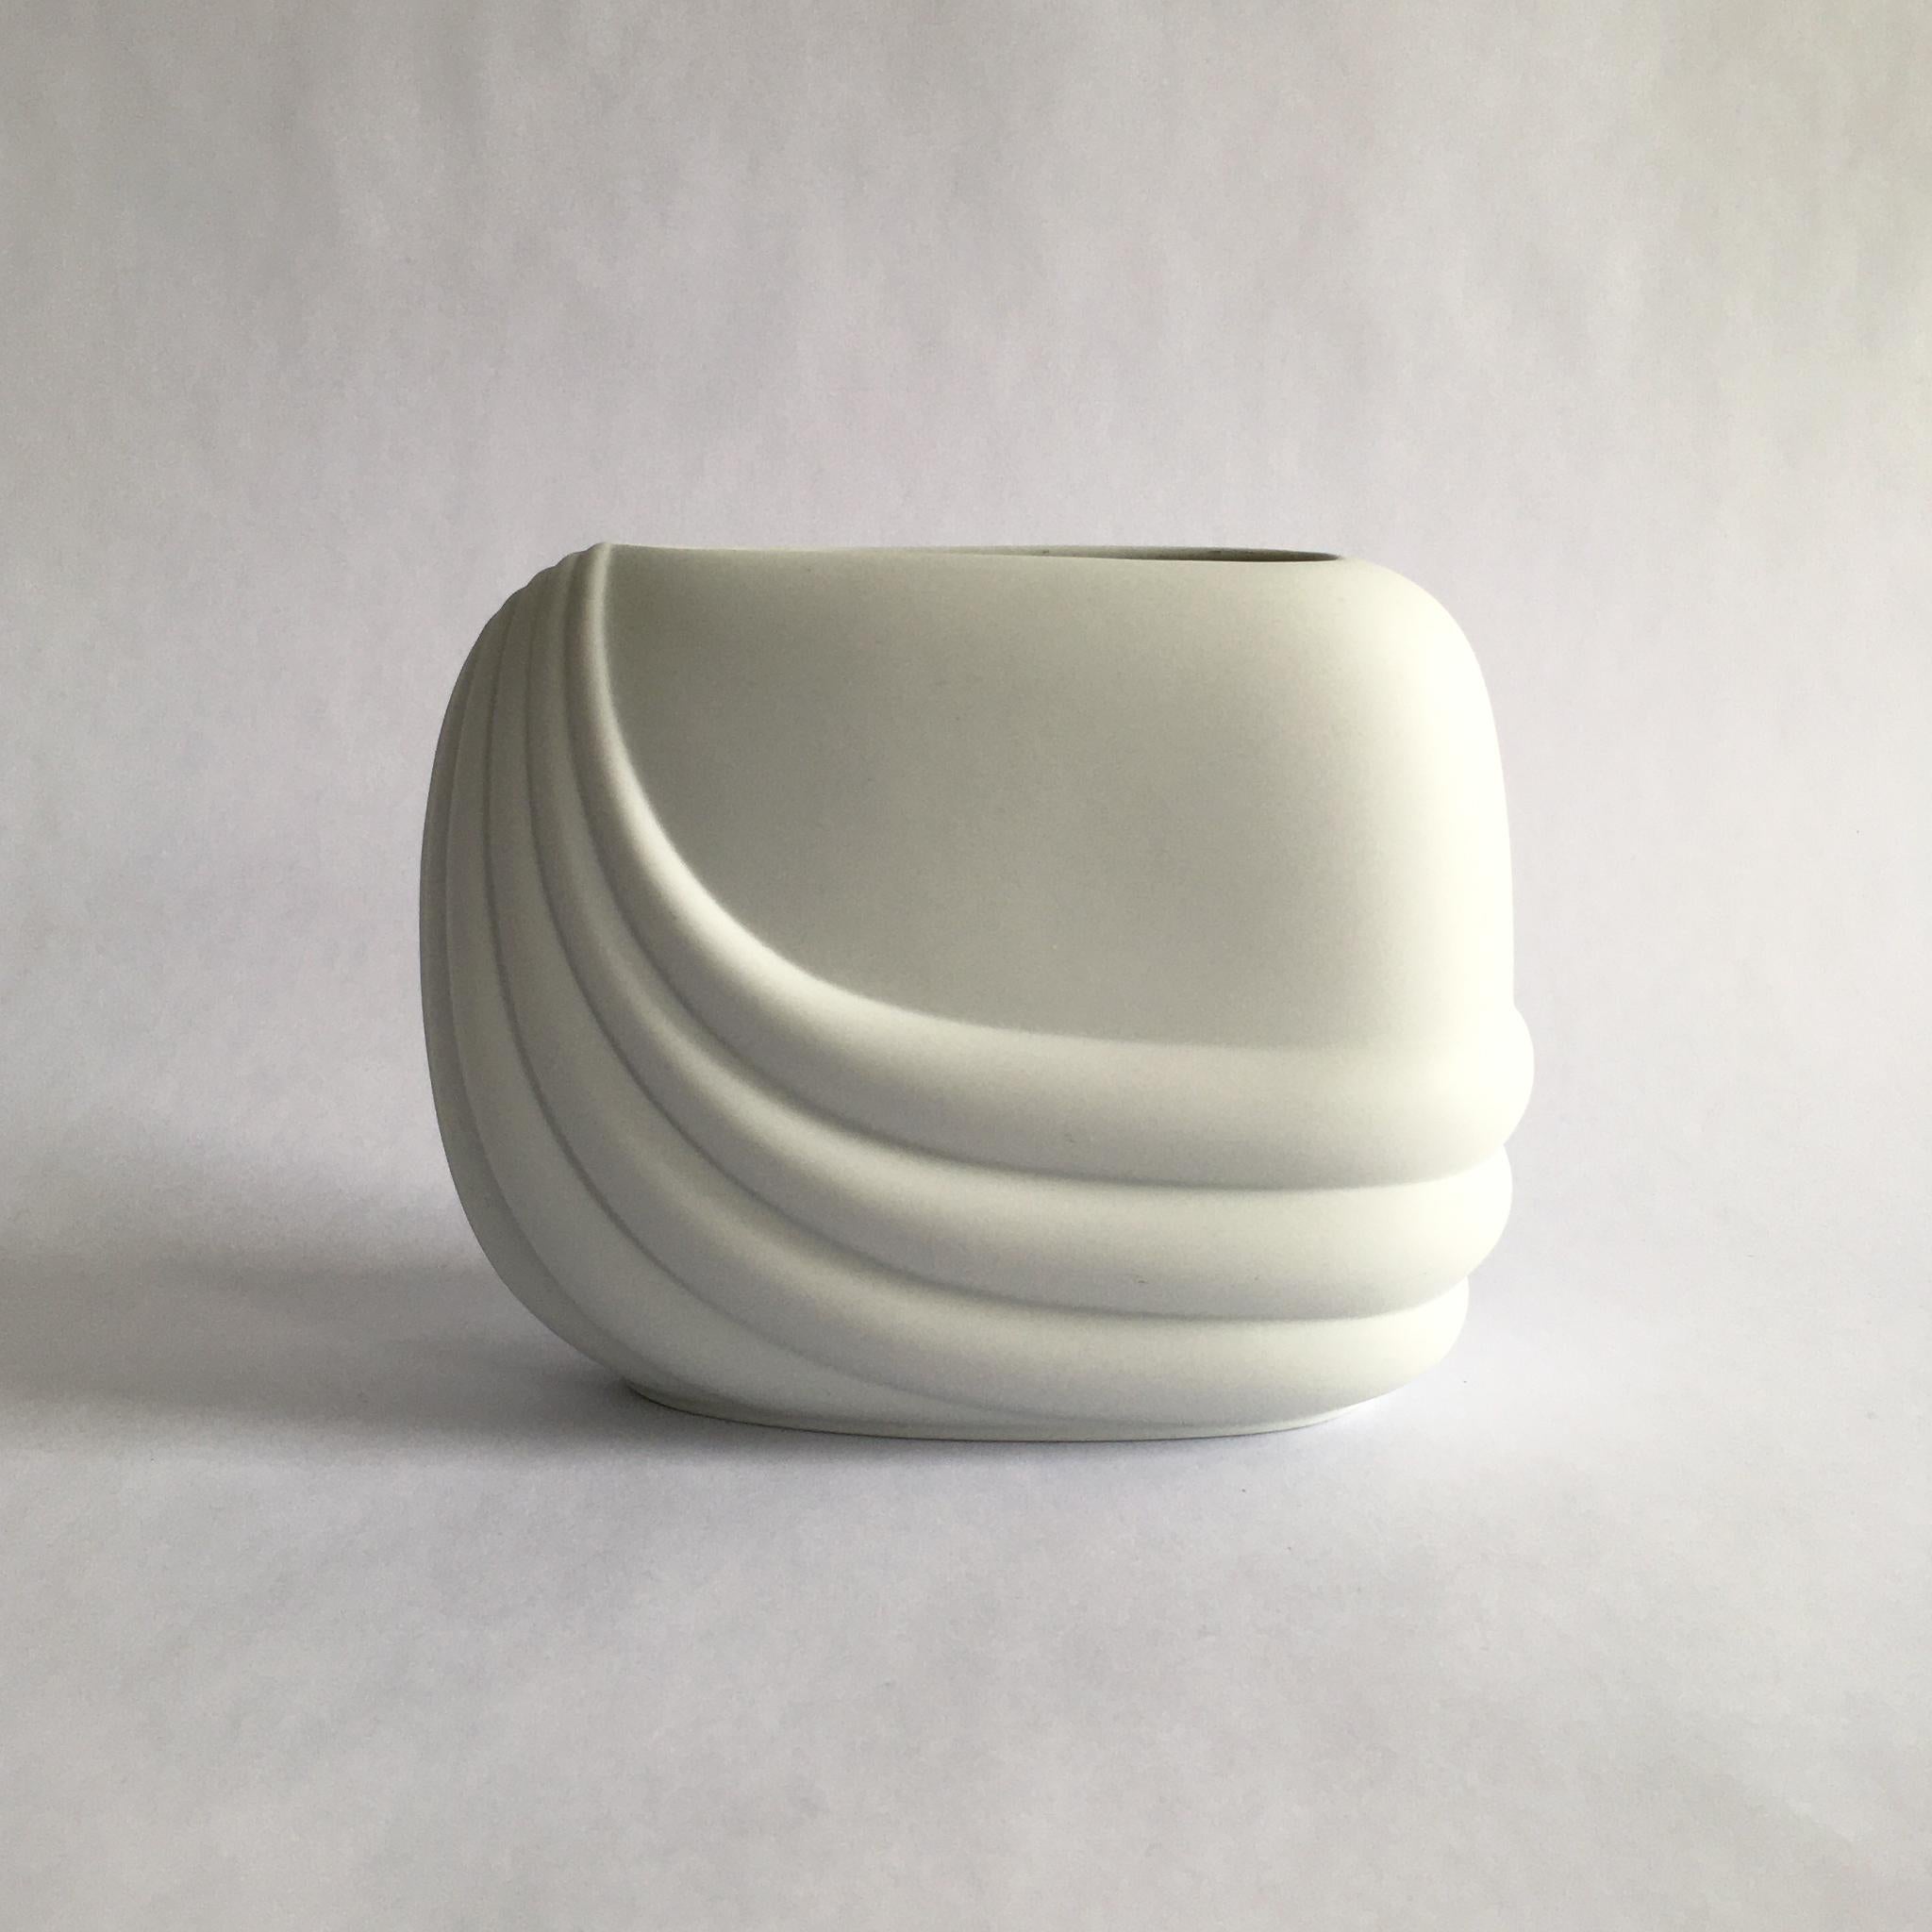 Rosenthal Studio line weiße Porzellanvase aus Biskuit von Uta Feyl, ca. 1980er Jahre. Atemberaubende geschwungene geometrische Form.

Abmessungen:
H 5